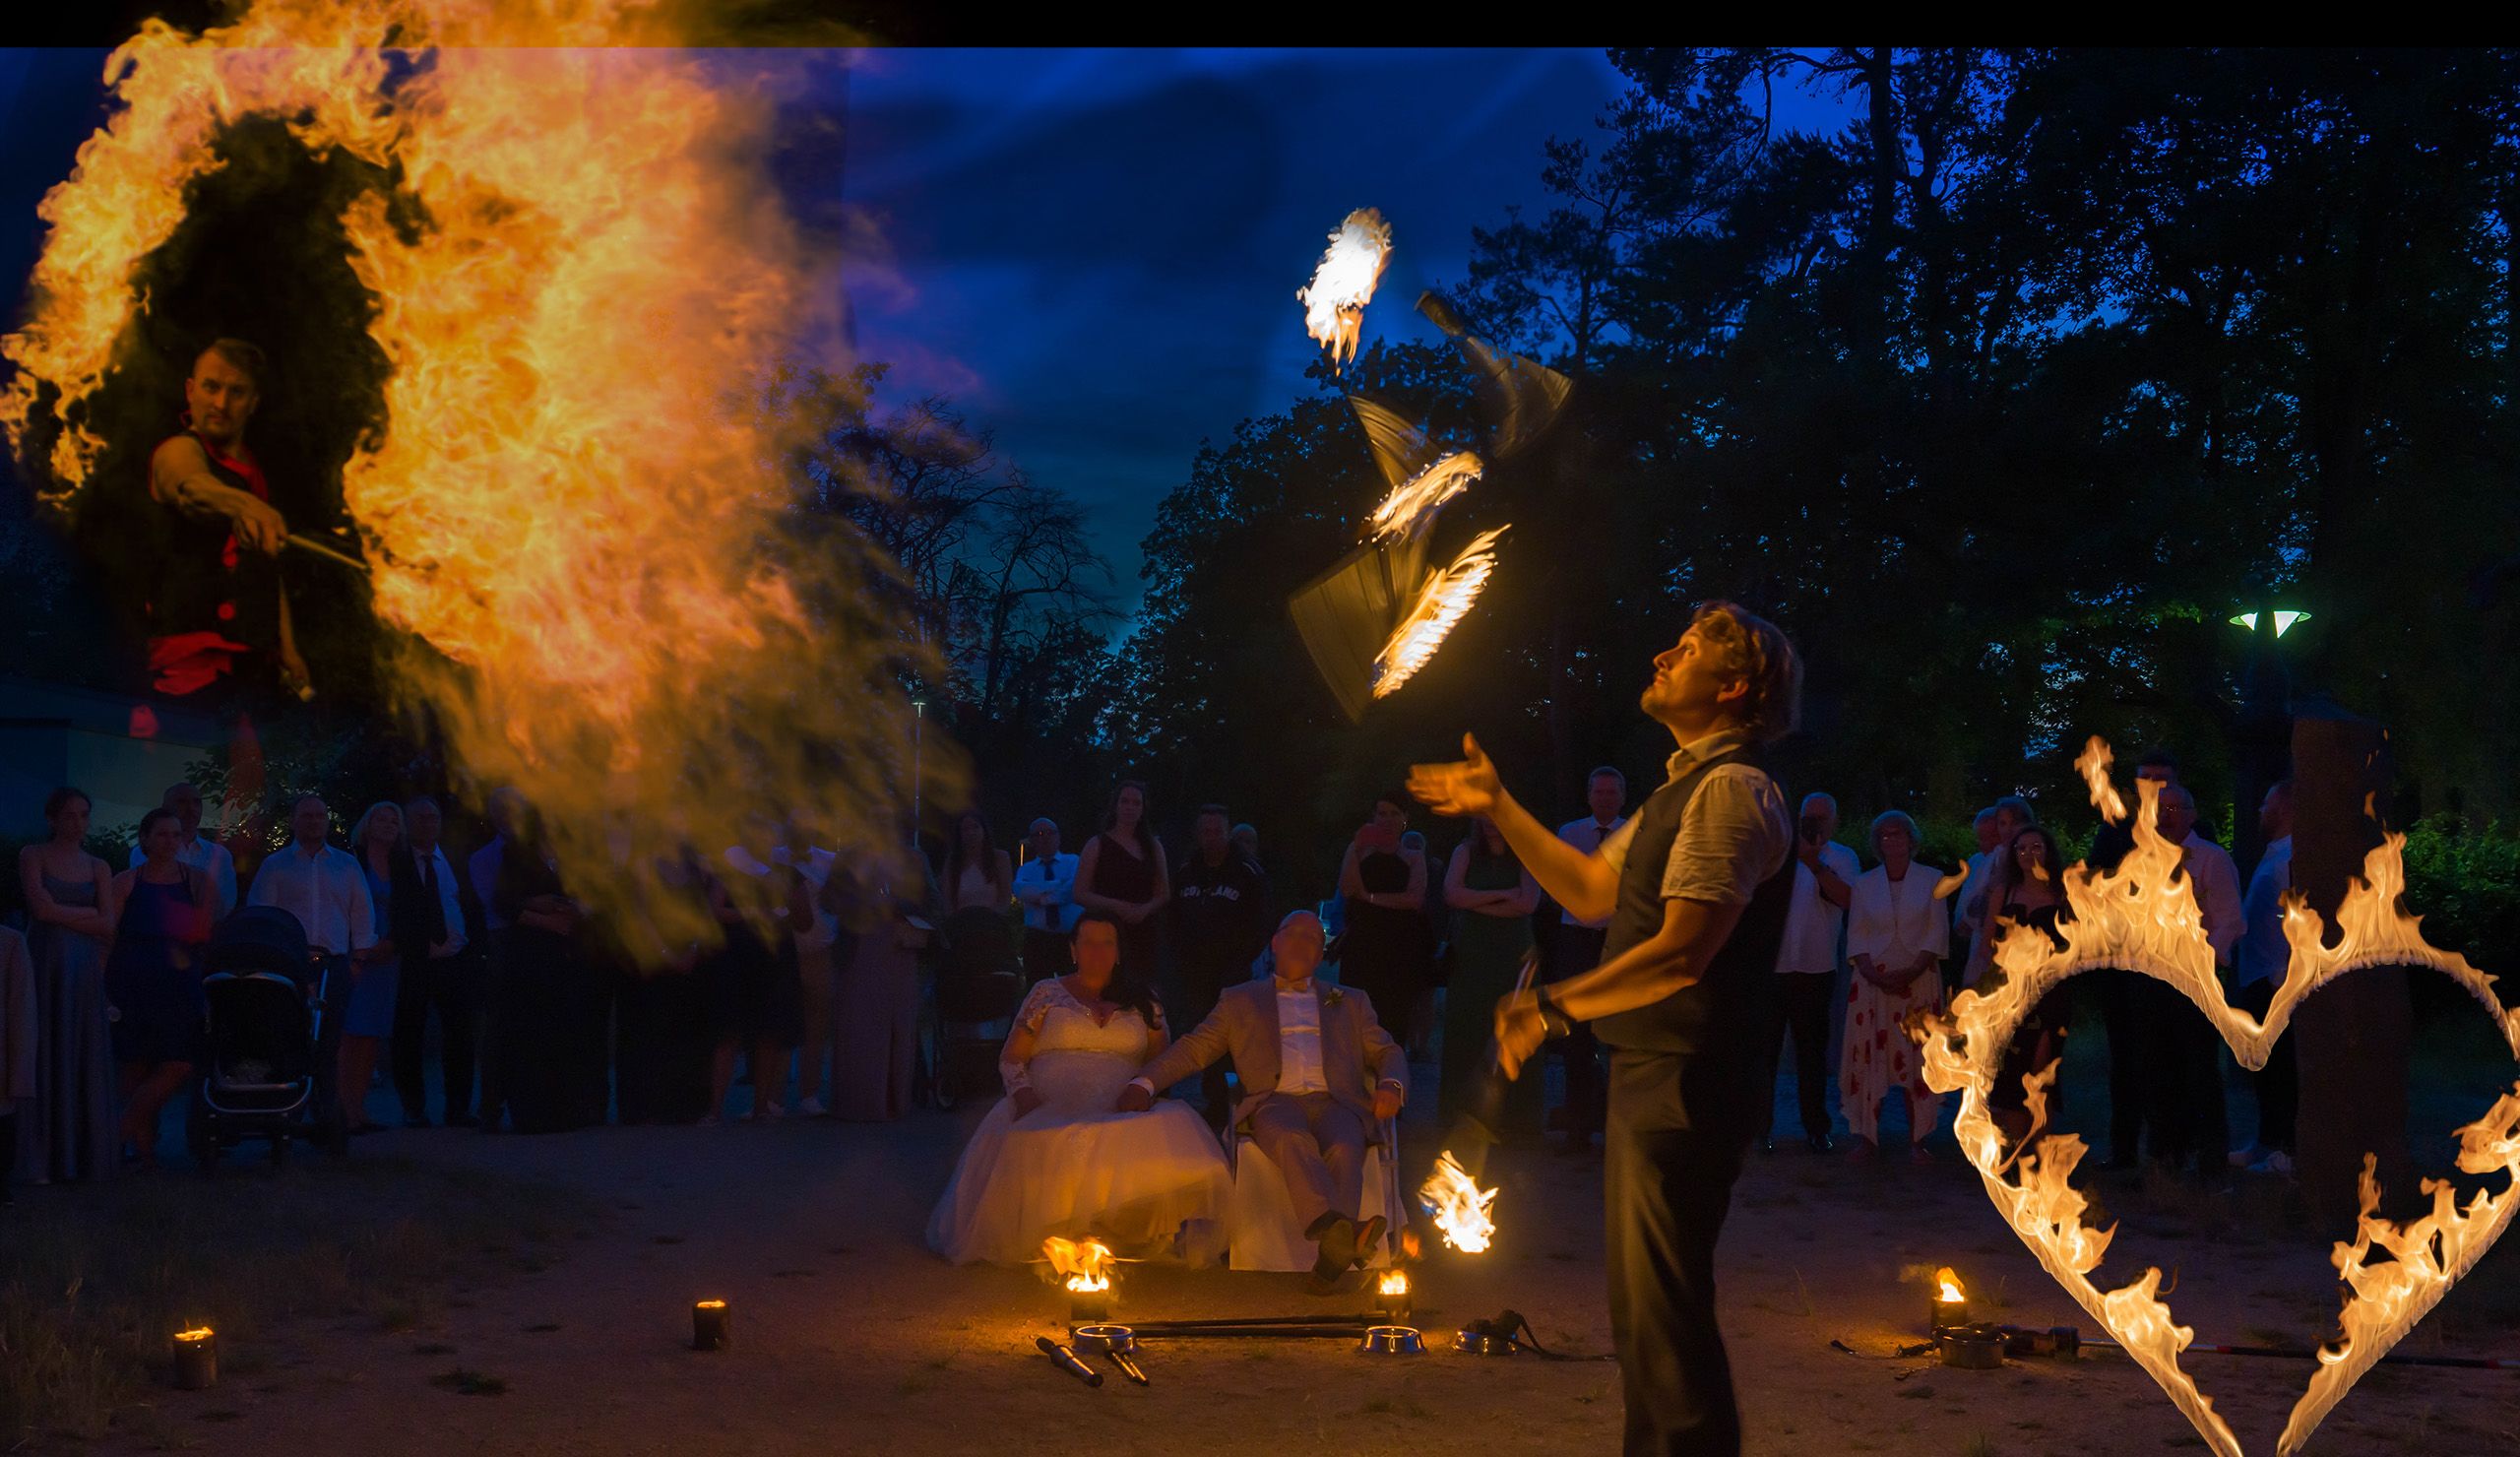 Hochzeitsfeuershow Collage mit Fackeljonglage, brennendem Herz und Feuer Effekten